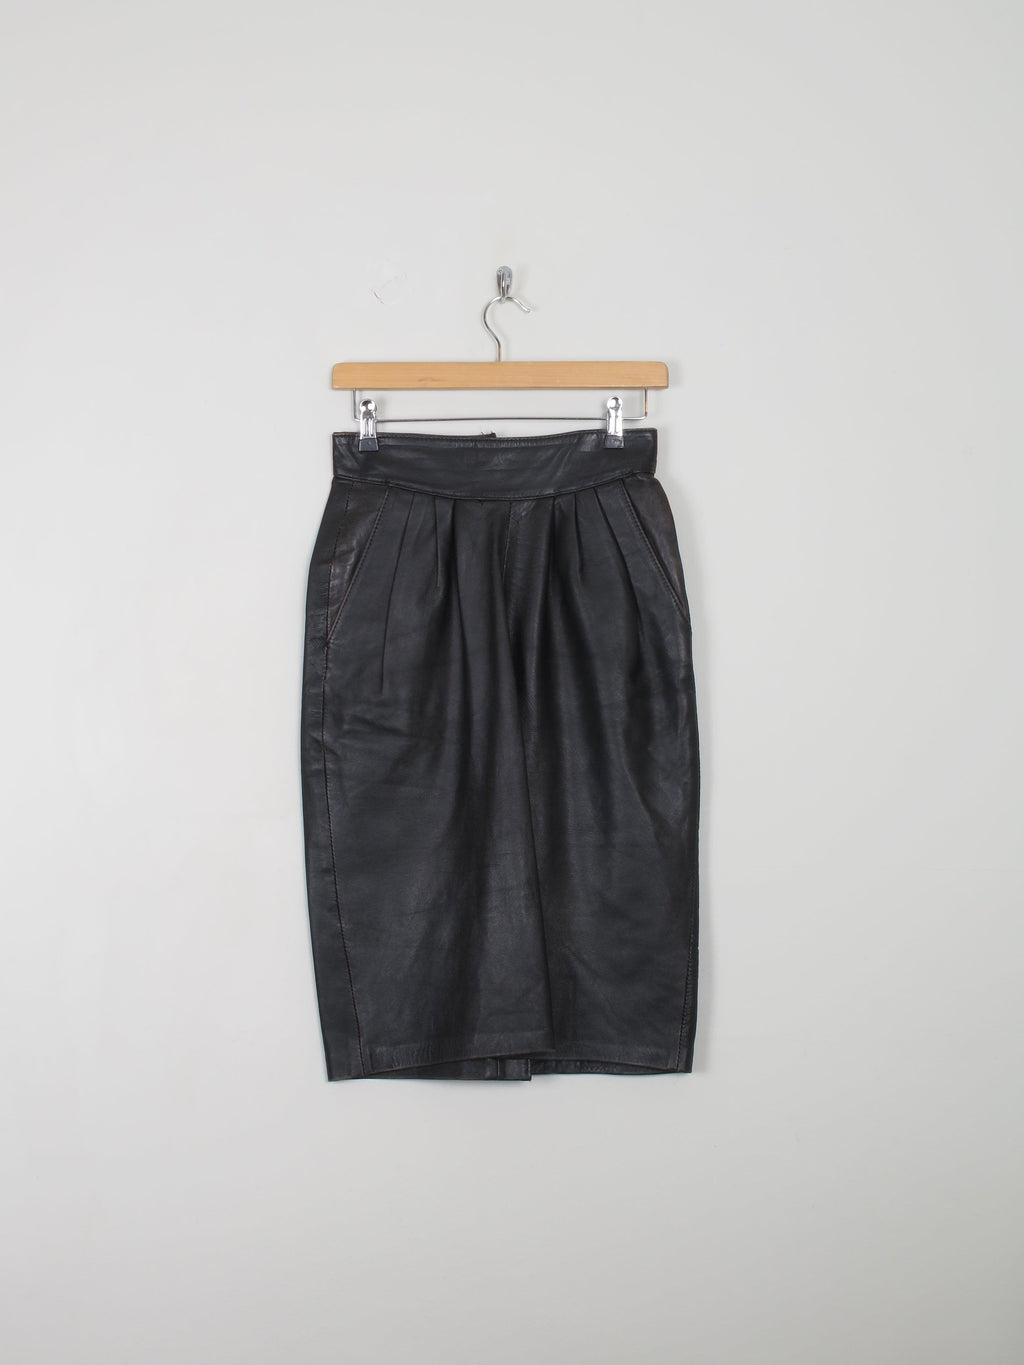 Vintage Leather Skirt Black 27" - The Harlequin